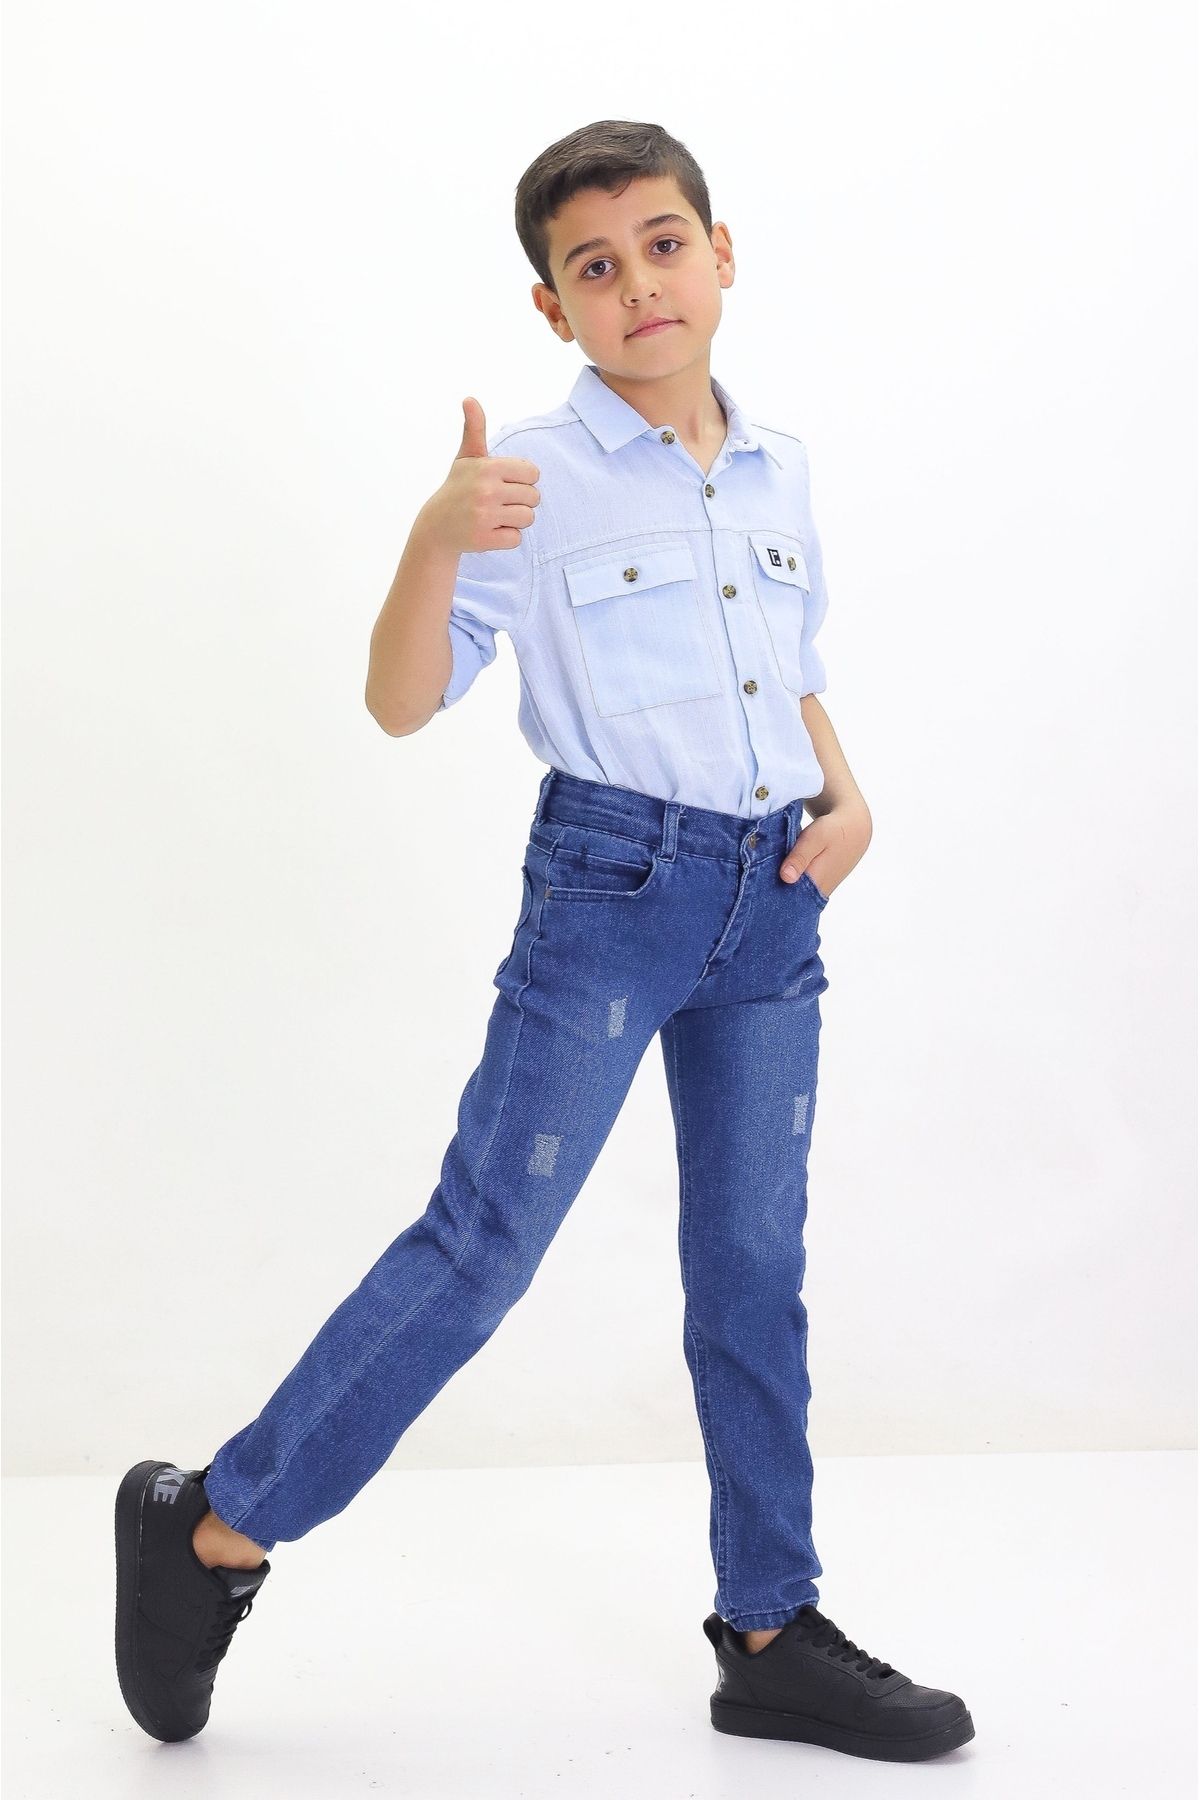 GZT TEKSTİL Erkek Çocuk Likralı Kot Jeans Pantolon Yıpratmalı (6-12 Yaş) Bel Gizli Lastikli